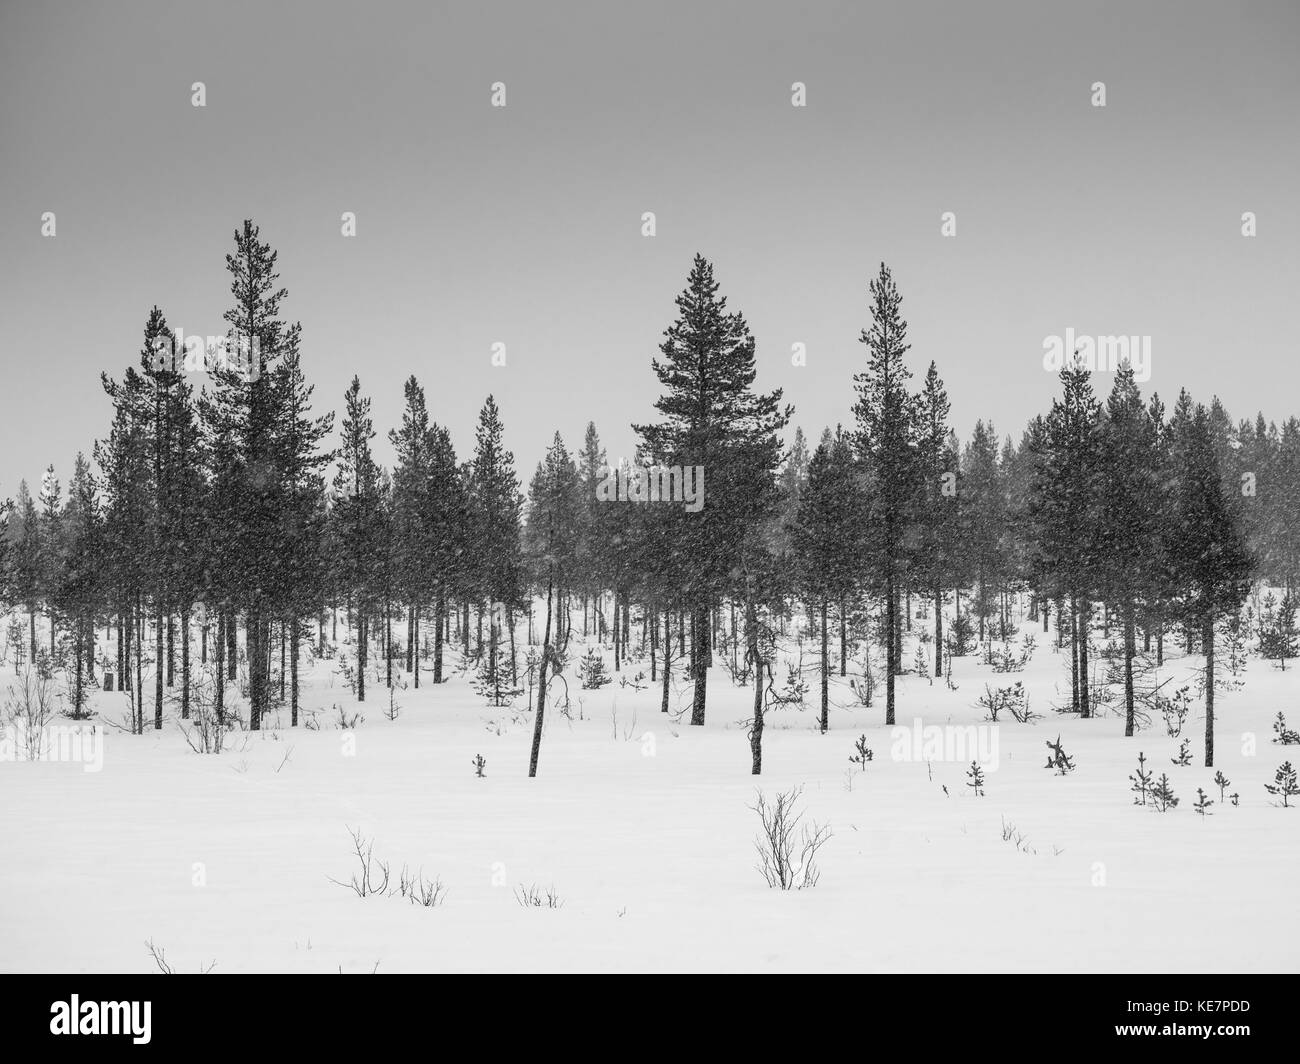 Les conifères dans une chute de neige ; Arjeplog, Suède, comté de Norrbotten Banque D'Images